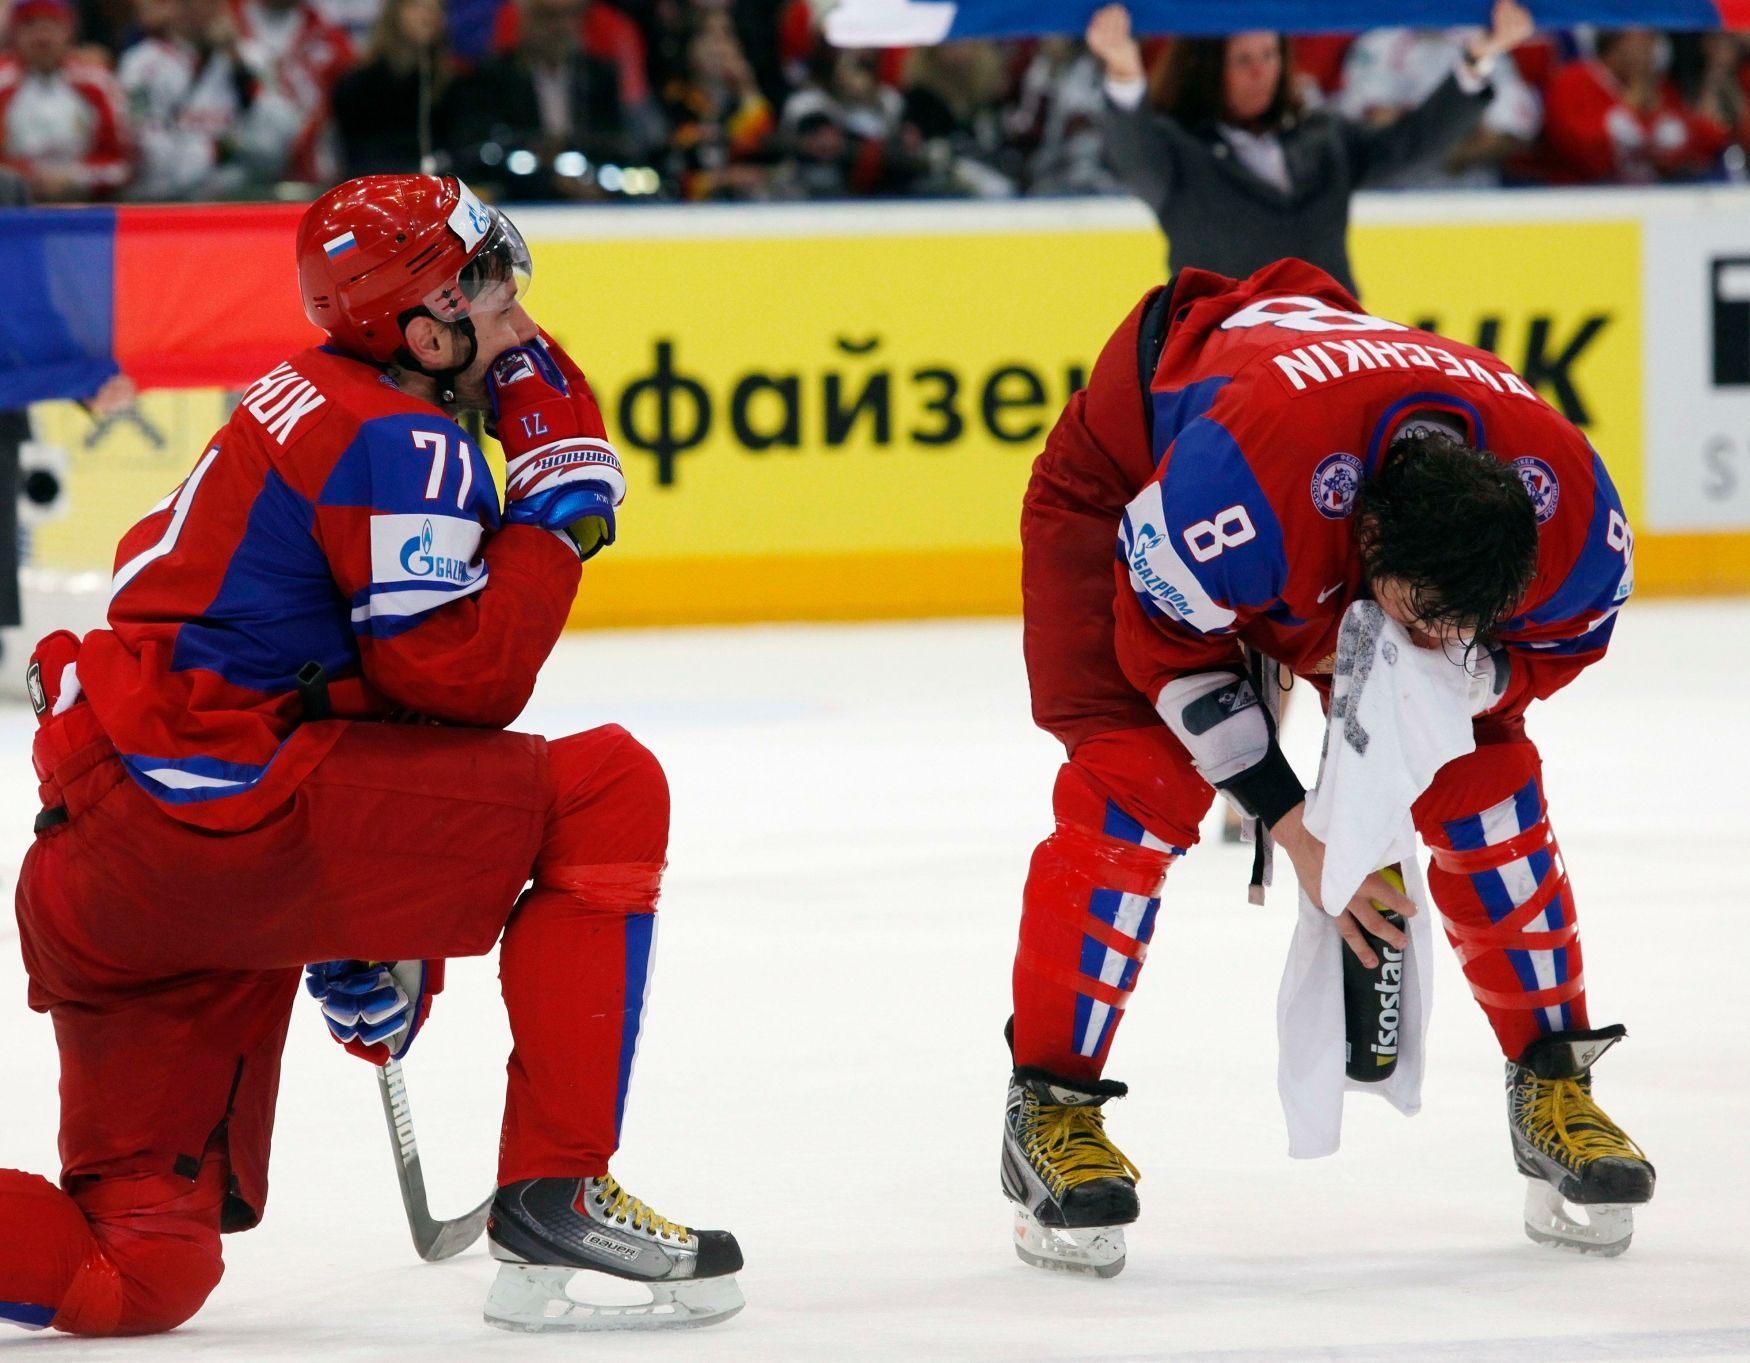 Finále MS 2010 v hokeji, Česko - Rusko: Zklamaní Ilja Kovalčuk (vlevo) a Alexandr Ovečkin